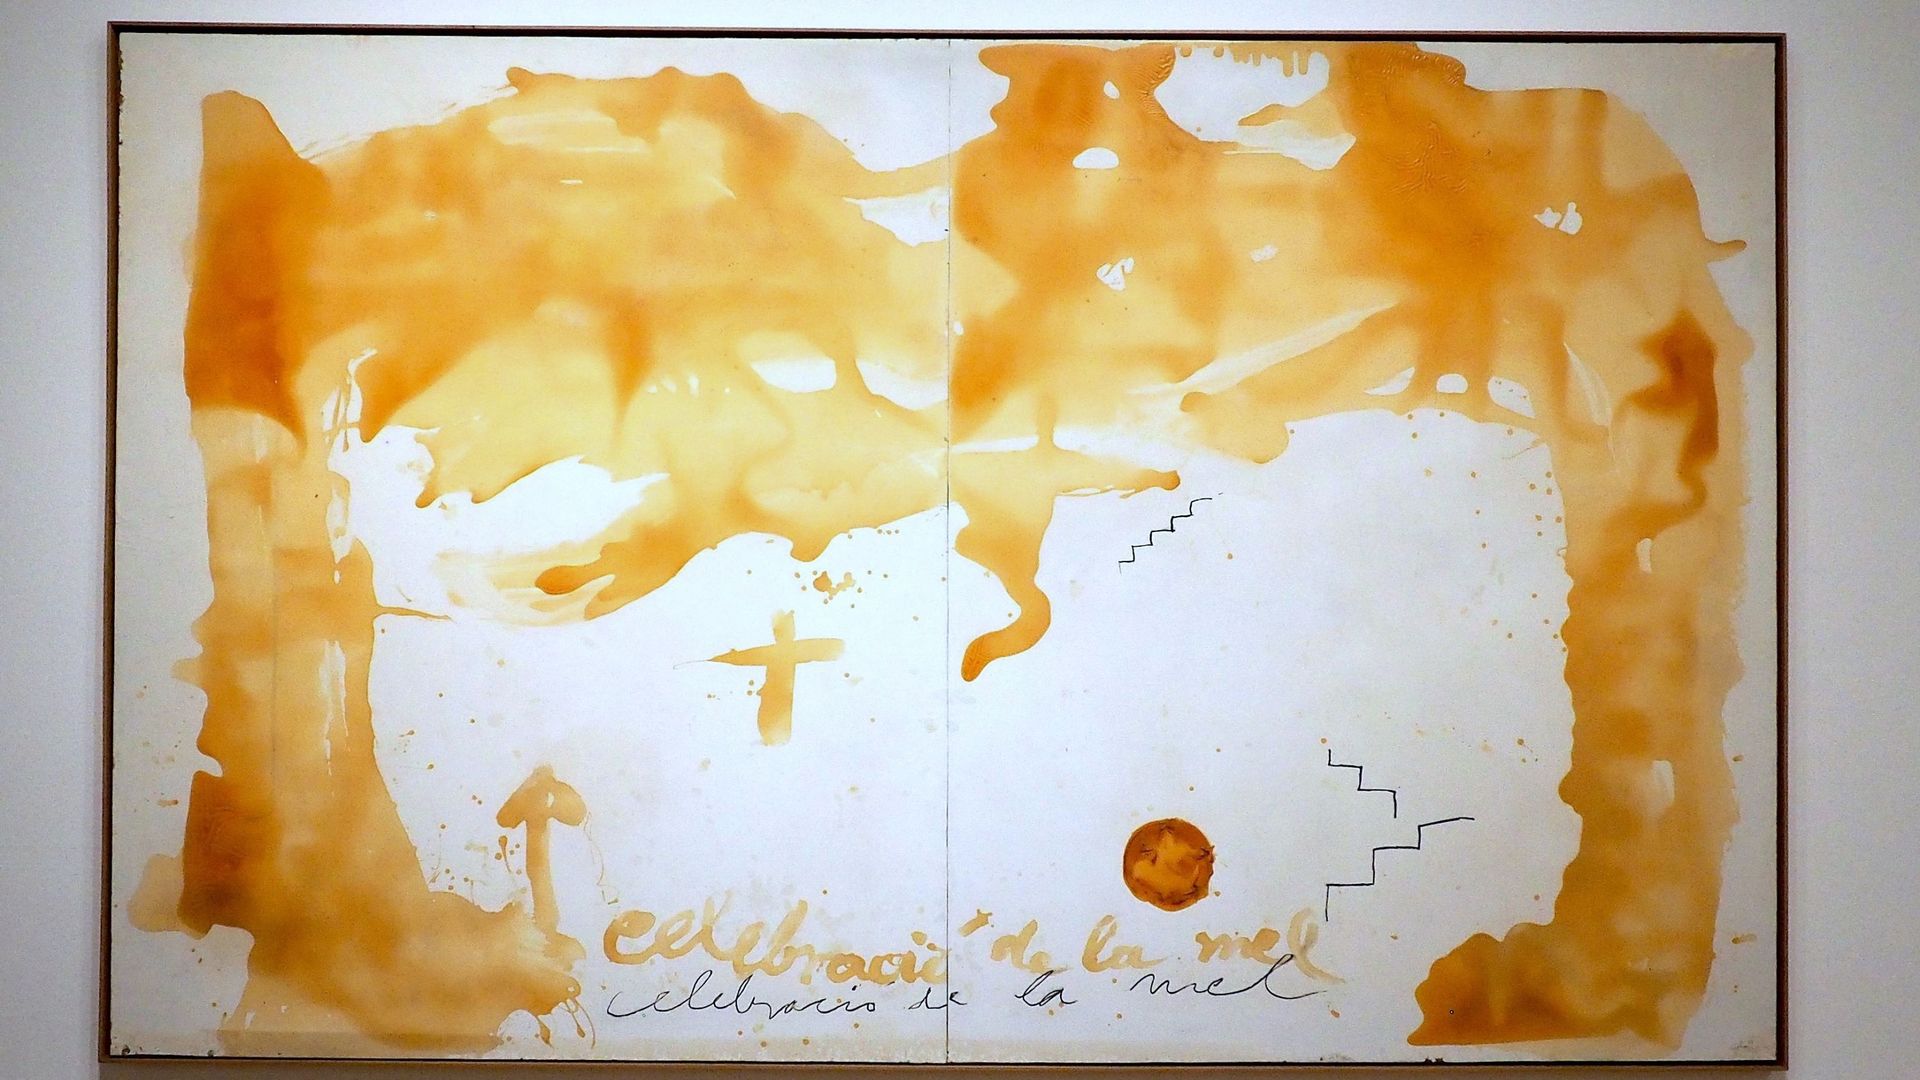 Antoni Tàpies, Celebracio de la mel ( Célébration du miel), 1989 Vue d'exposition